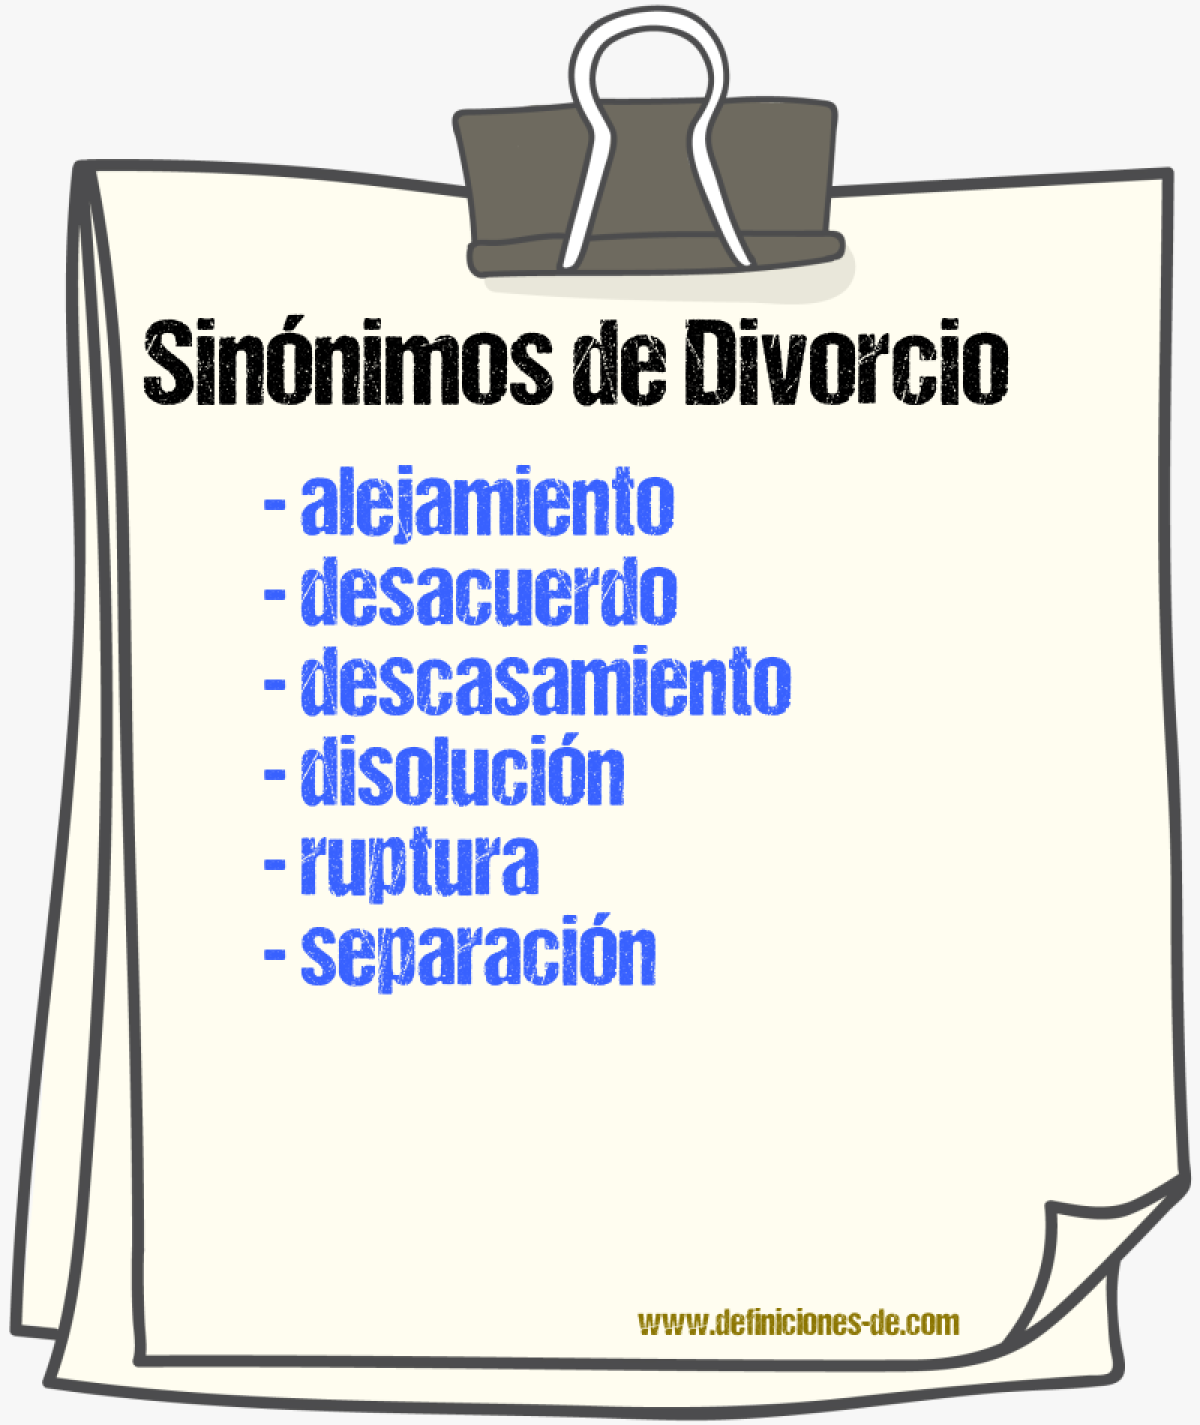 Sinónimos de divorcio